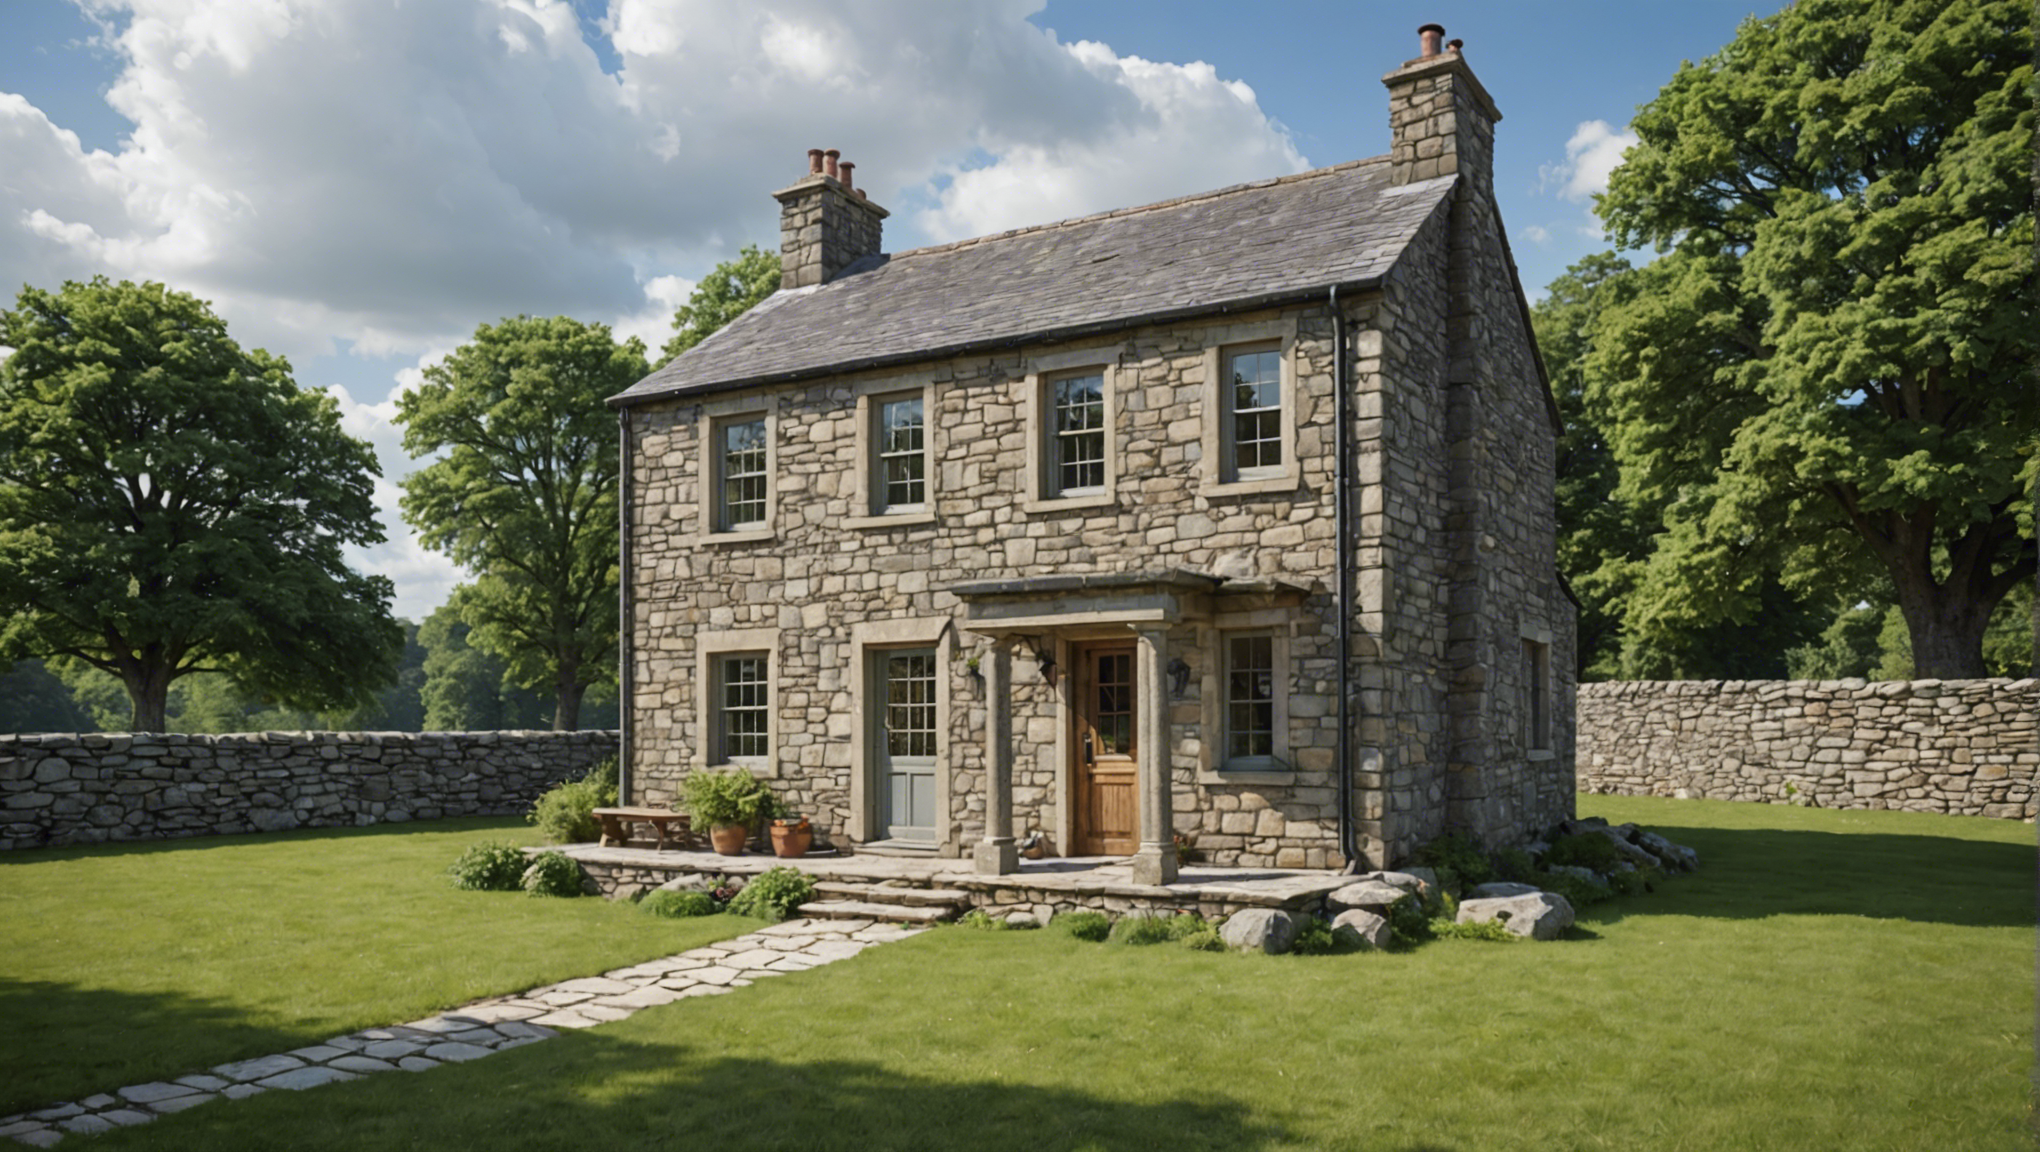 découvrez les étapes clés pour réussir l'isolation d'une maison ancienne en pierre et améliorer son confort tout en préservant son authenticité.